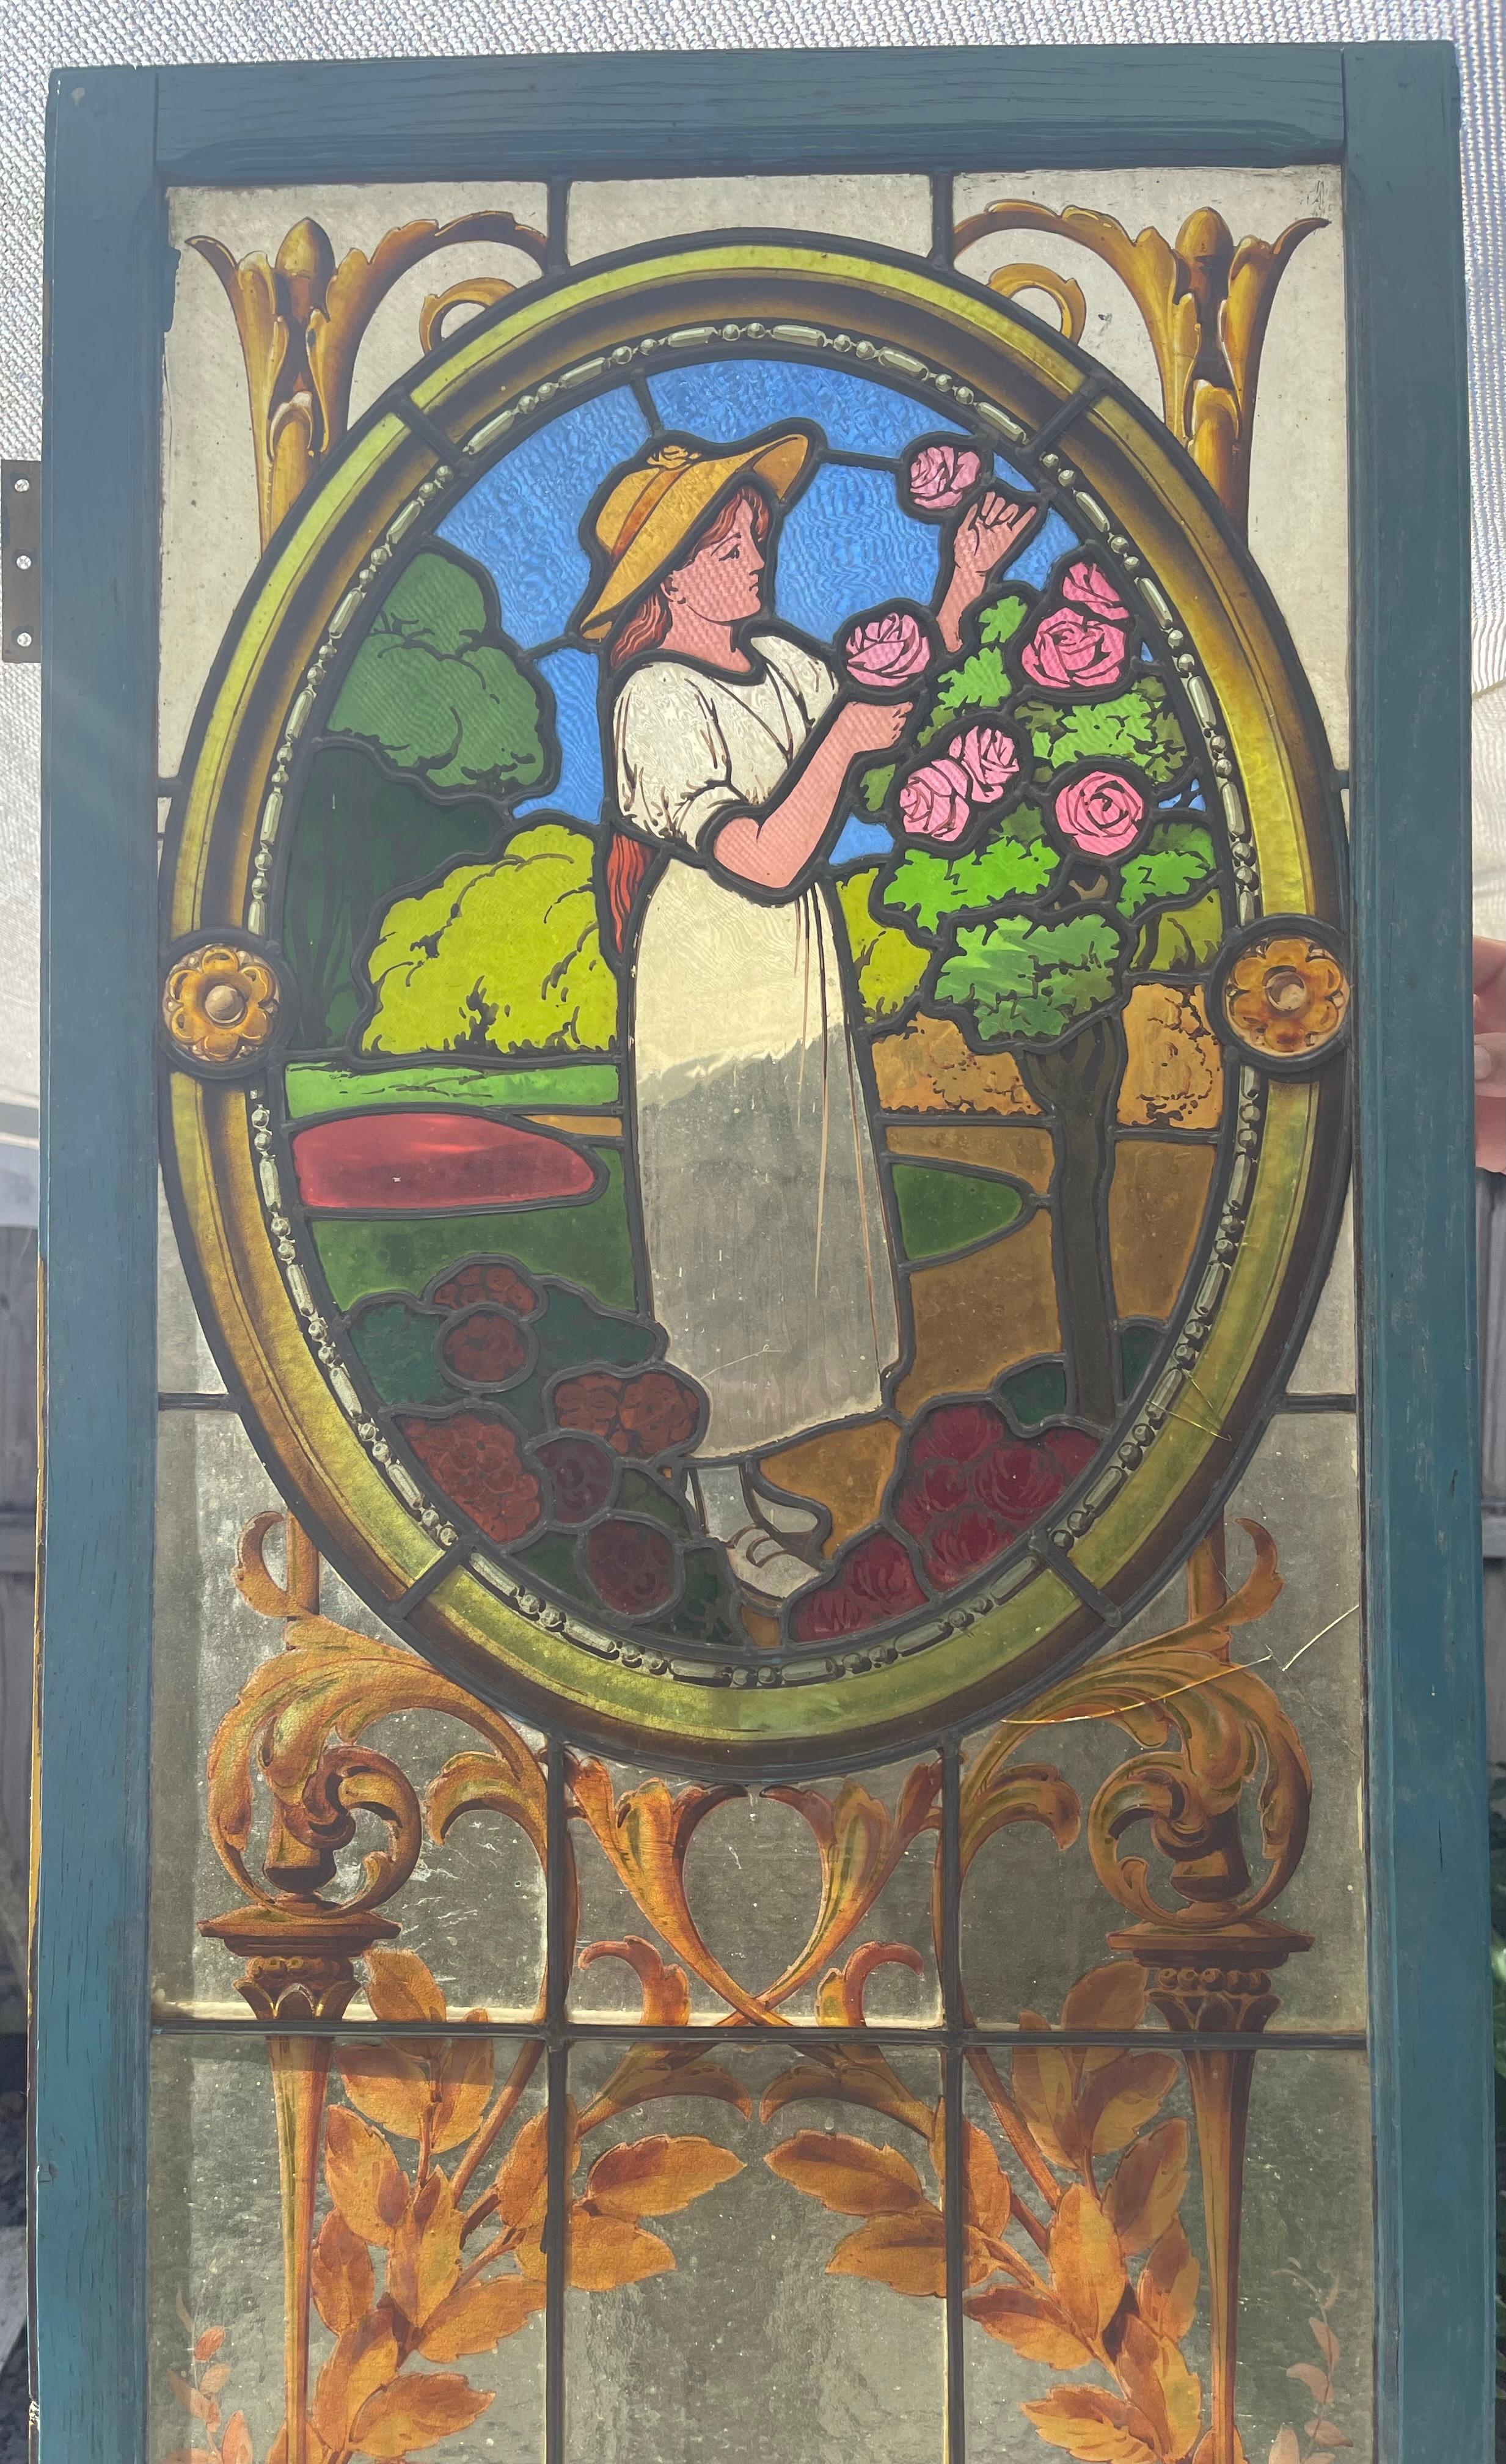 Schönes altes Glasfenster aus dem Jahr 1890, das eine ländliche Szene darstellt. An seinem Sockel gibt eine Glasarbeit in Form einer Muschel den Blick auf eine Vase und ihre Akanthusblätter frei. Oben auf der Tafel ist eine Frau zu sehen, die einige